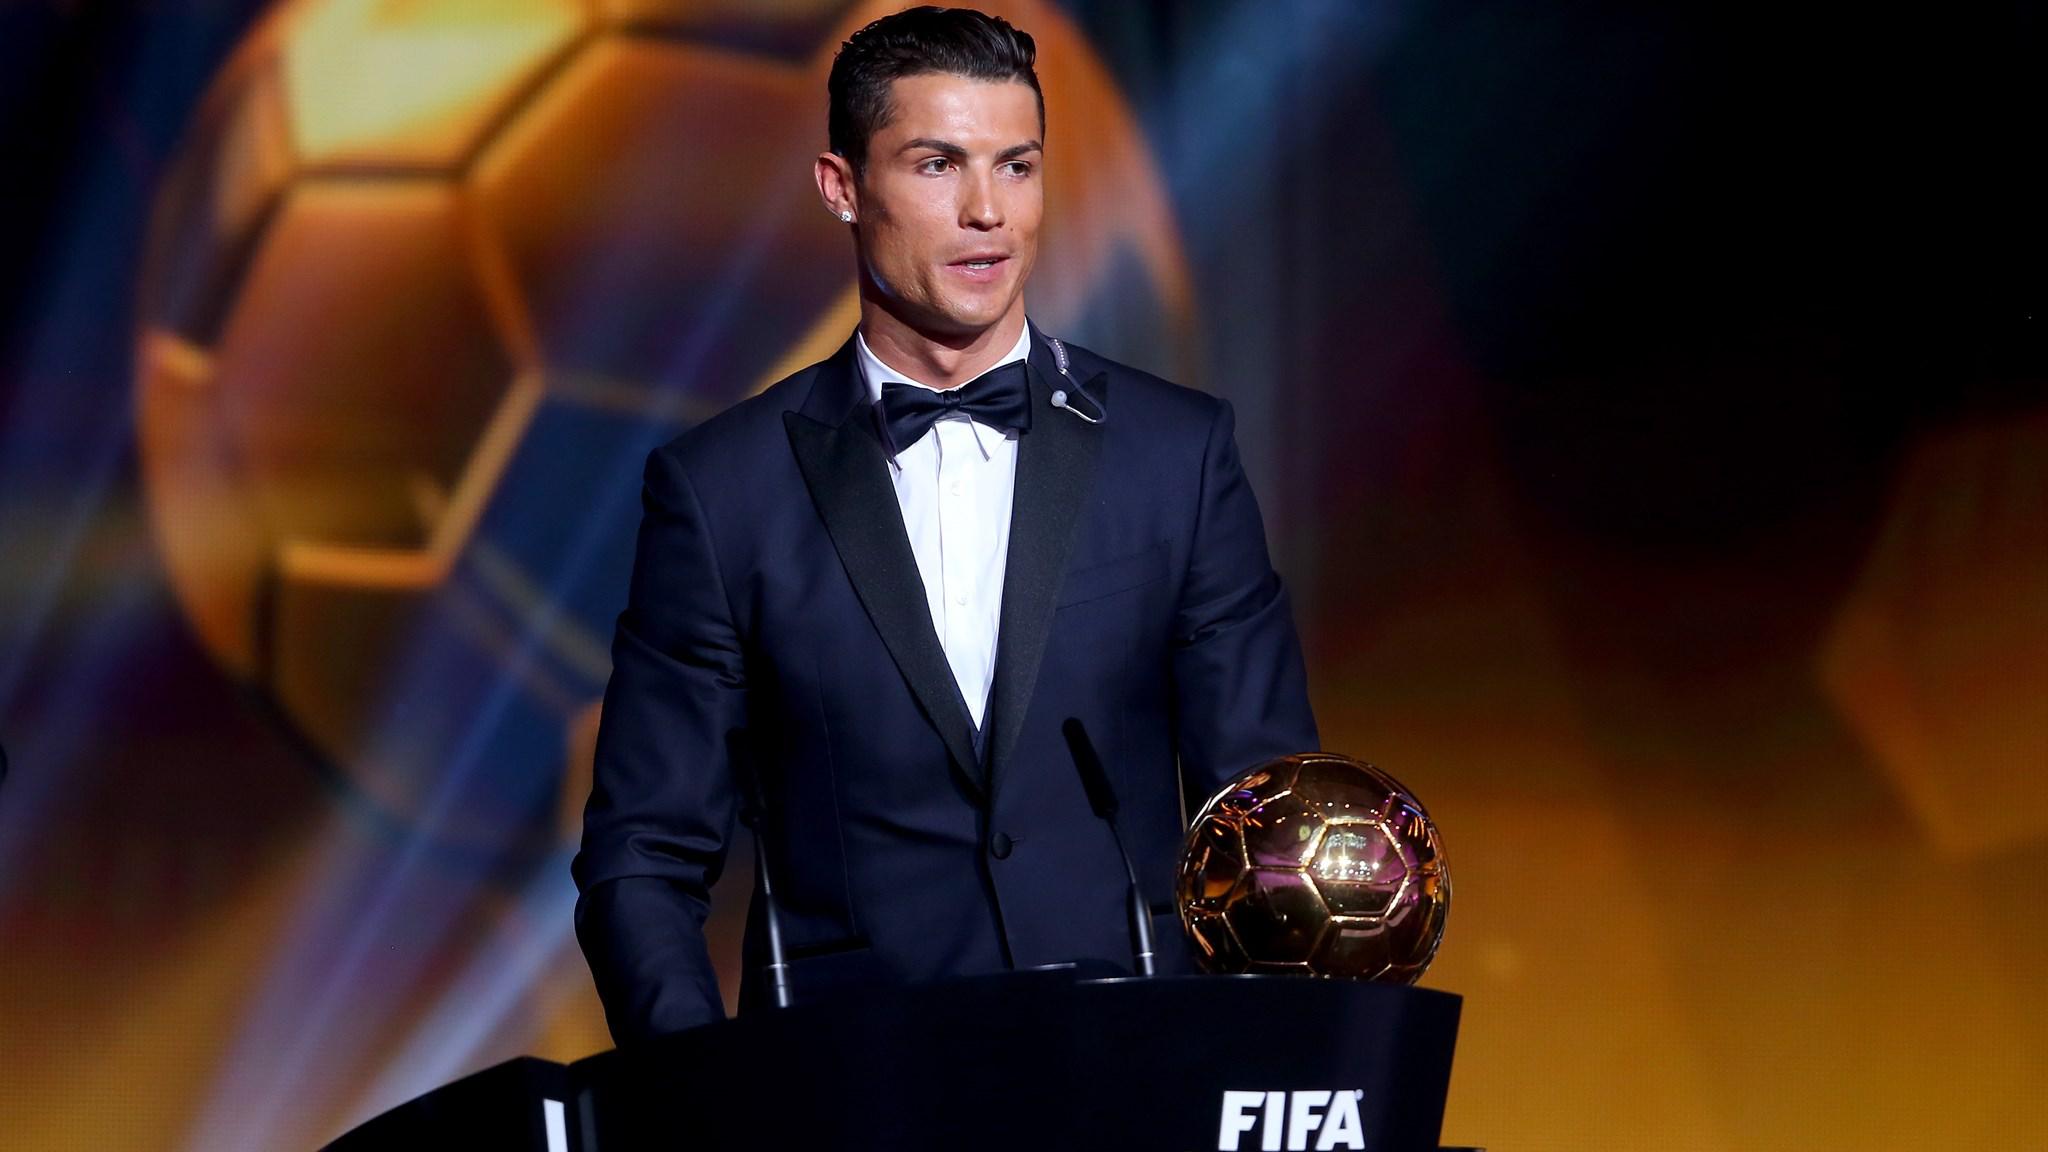 Fifa Ballon D Or Winner Cristiano Ronaldo Of Portugal And